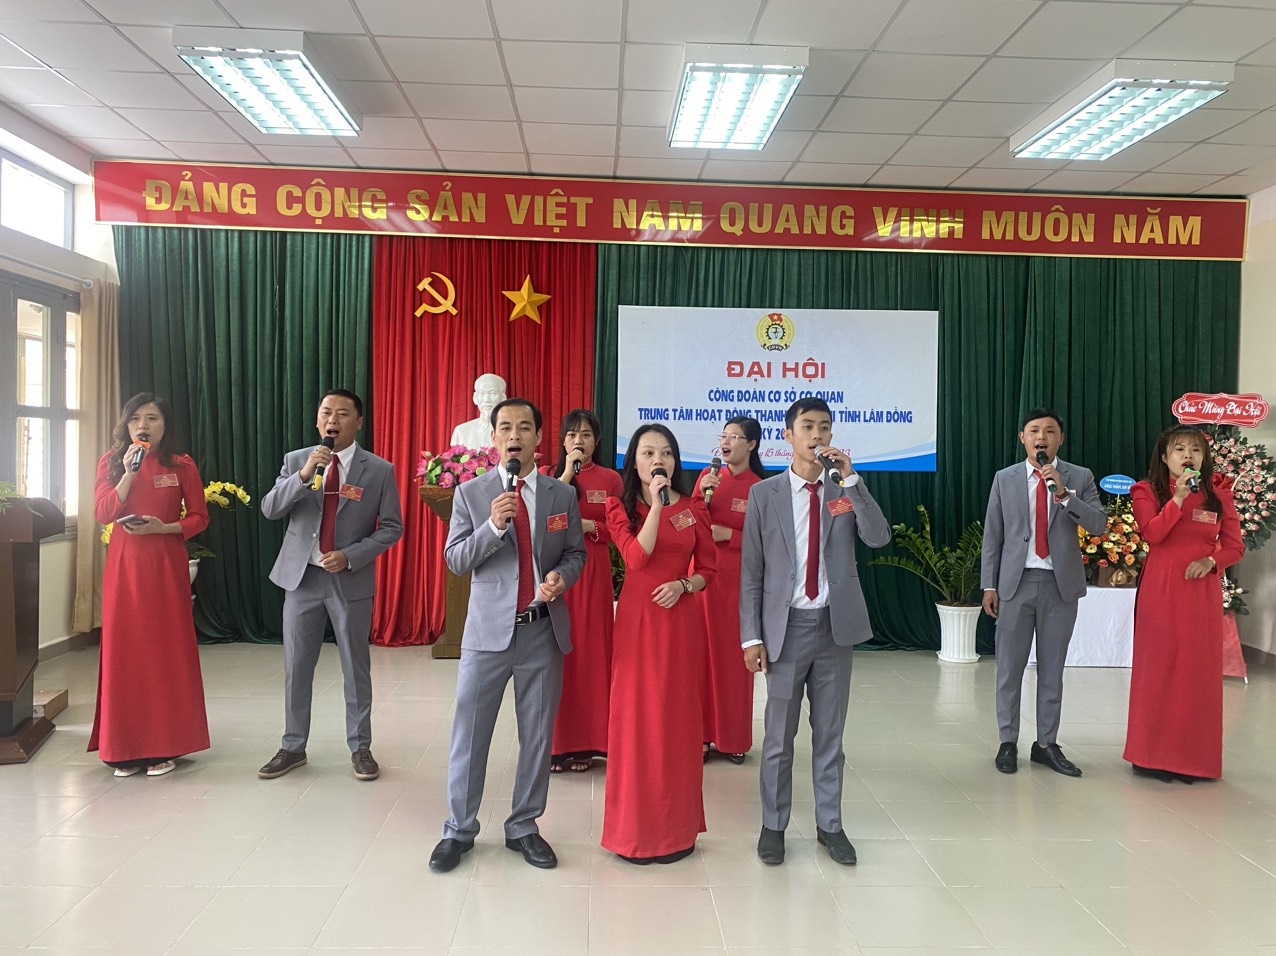 Lâm đồng: Sẵn sàng cho đại hội công đoàn cấp trên cơ sở nhiệm kỳ 2023 - 2028